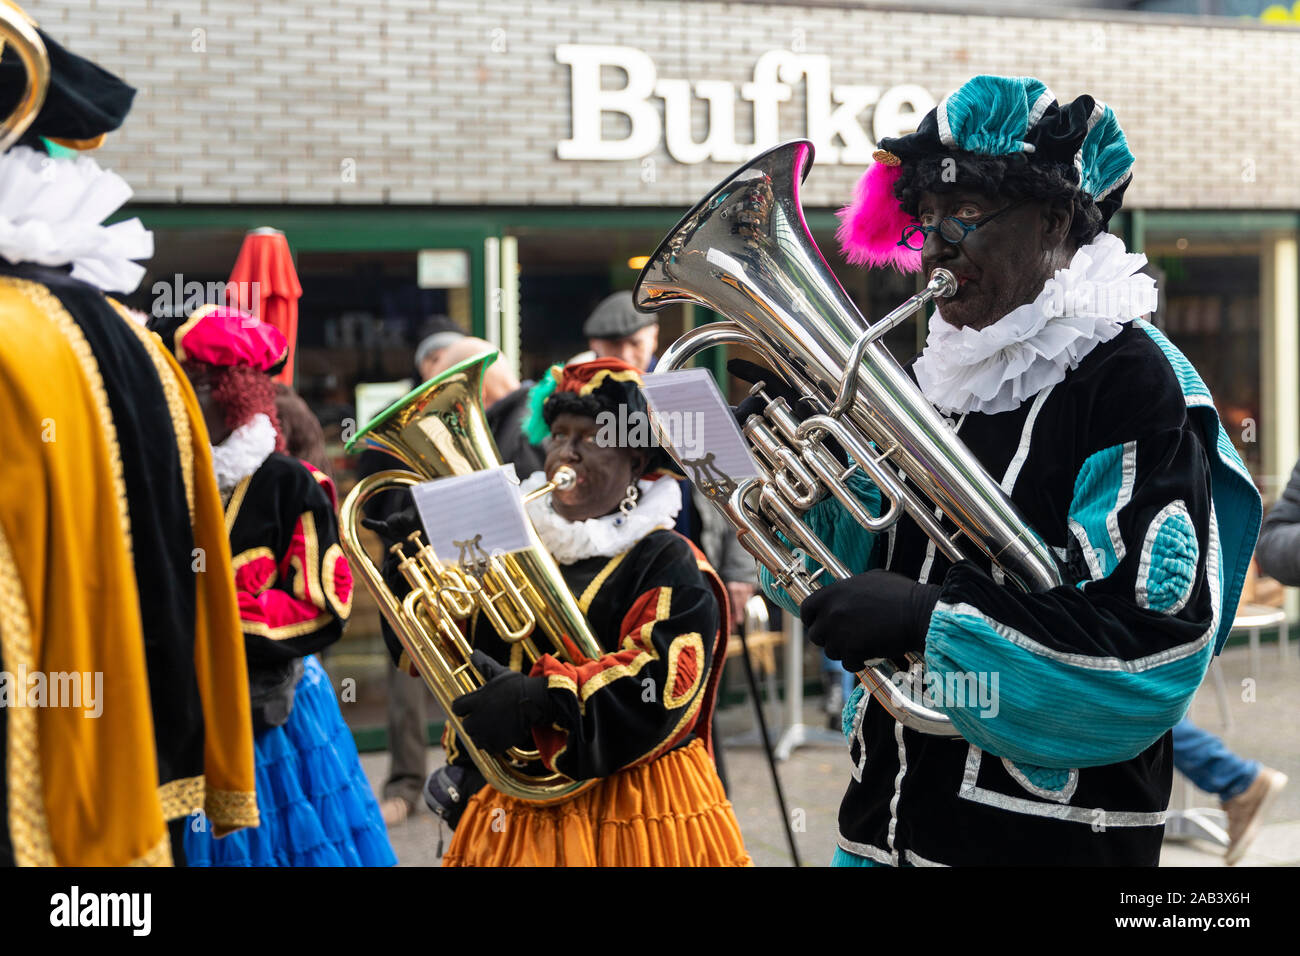 Eindhoven, Niederlande, 23. November 2019. Ein piet tragen ein buntes Kostüm in einer Blaskapelle spielen Sinterklaas Musik auf einer Trompete. Niederländische tra Stockfoto